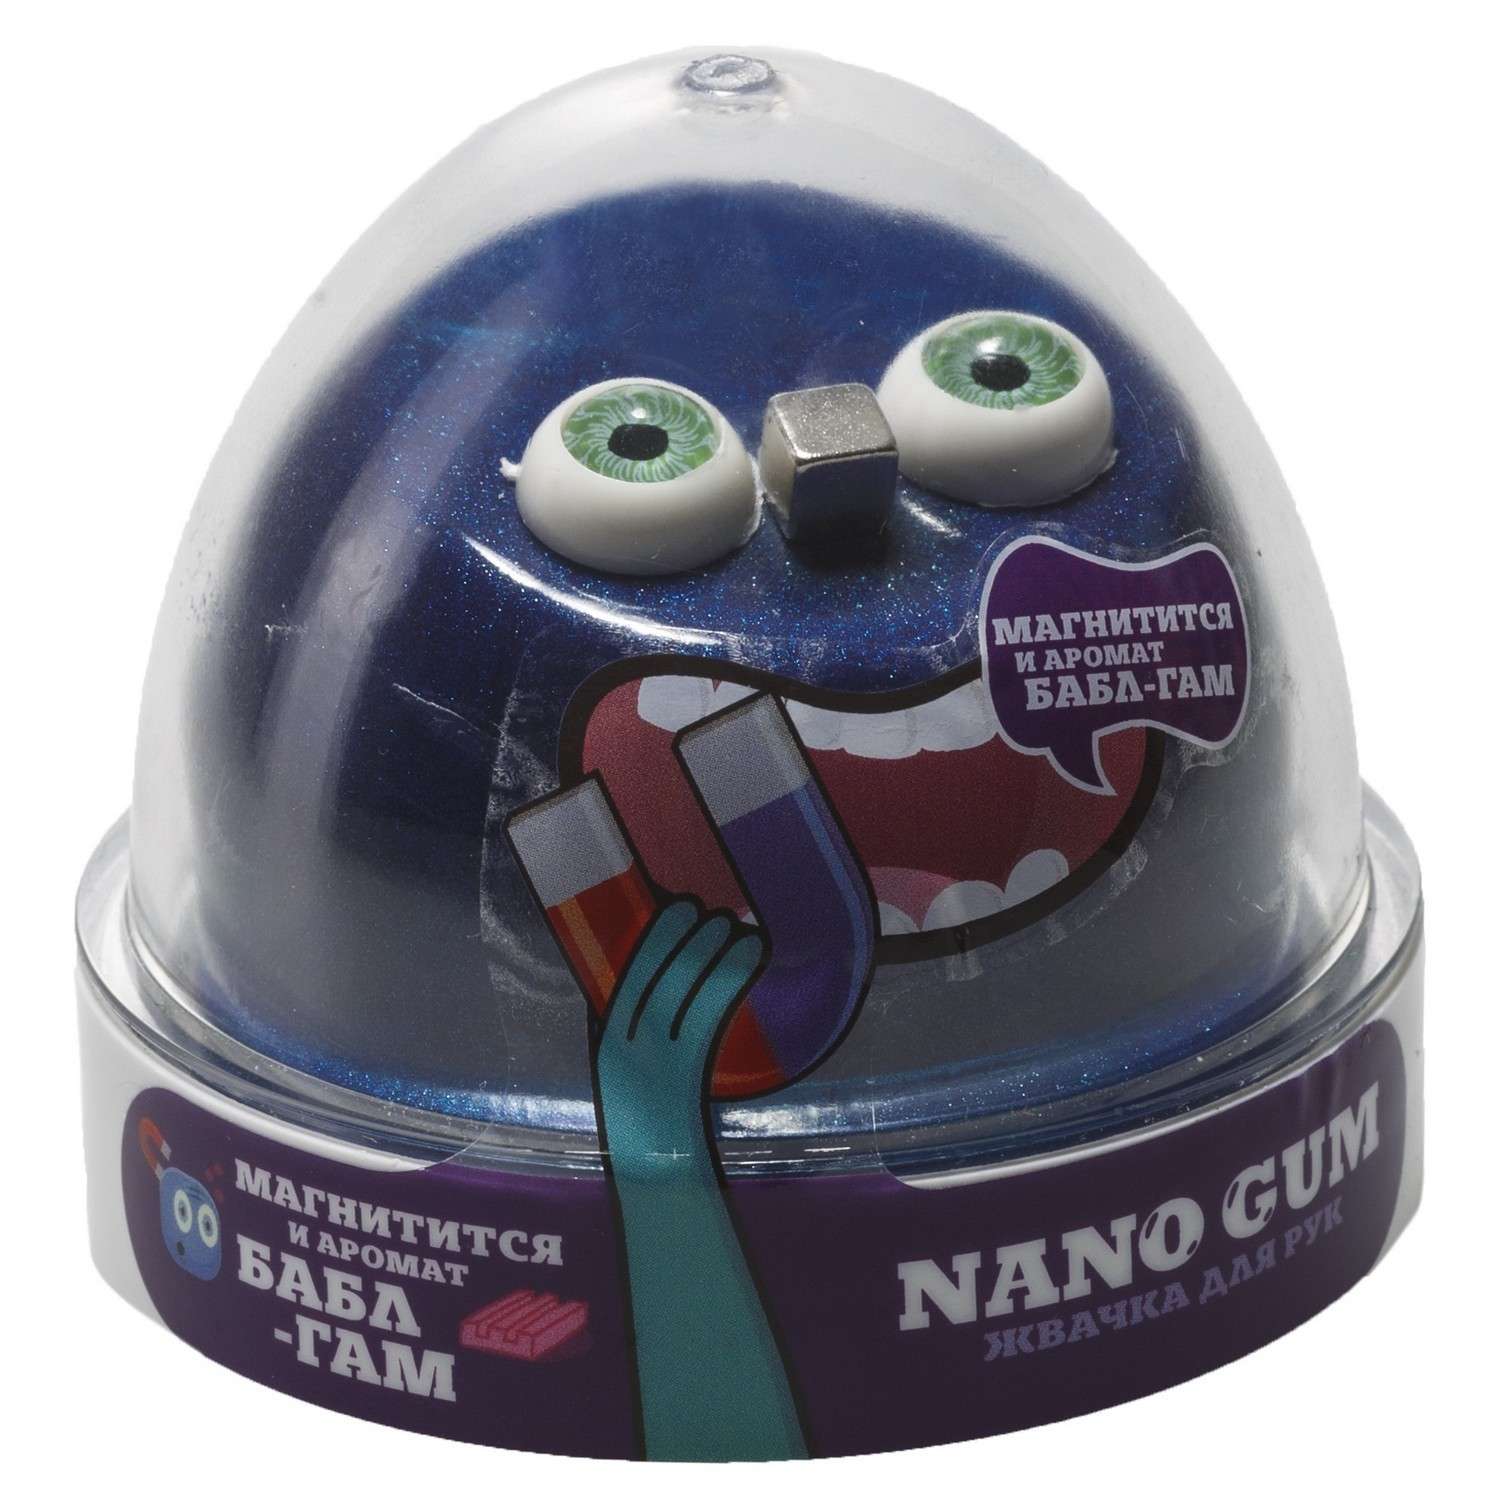 Жвачка для рук Nano Gum магнитный аромат Бабл Гам 50 г - фото 1